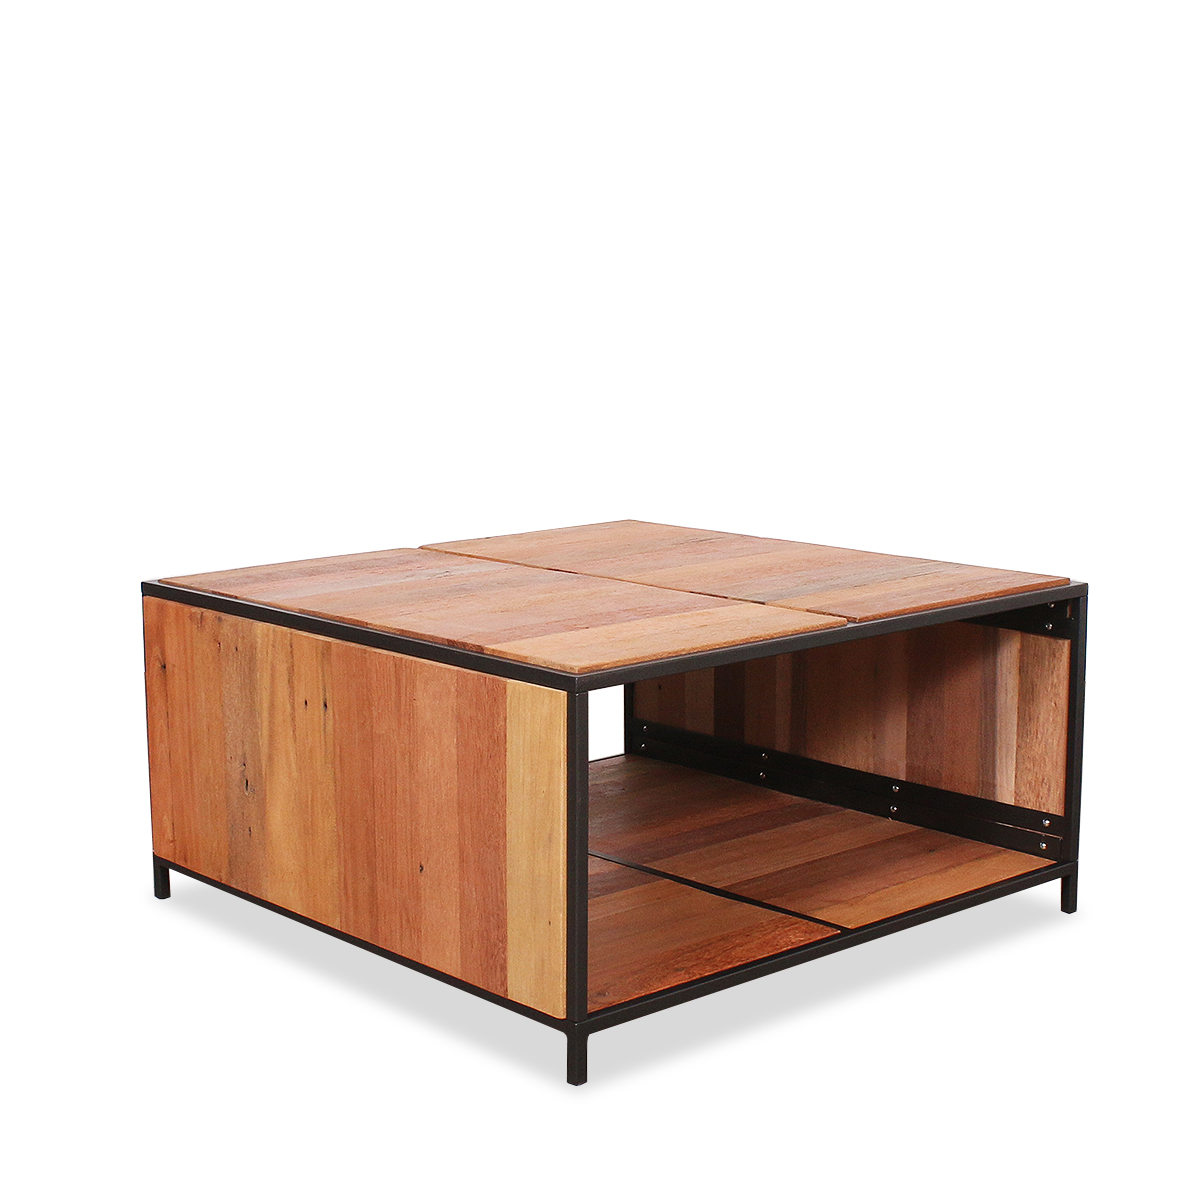 Table basse carrée bois recyclé et métal LIPAT